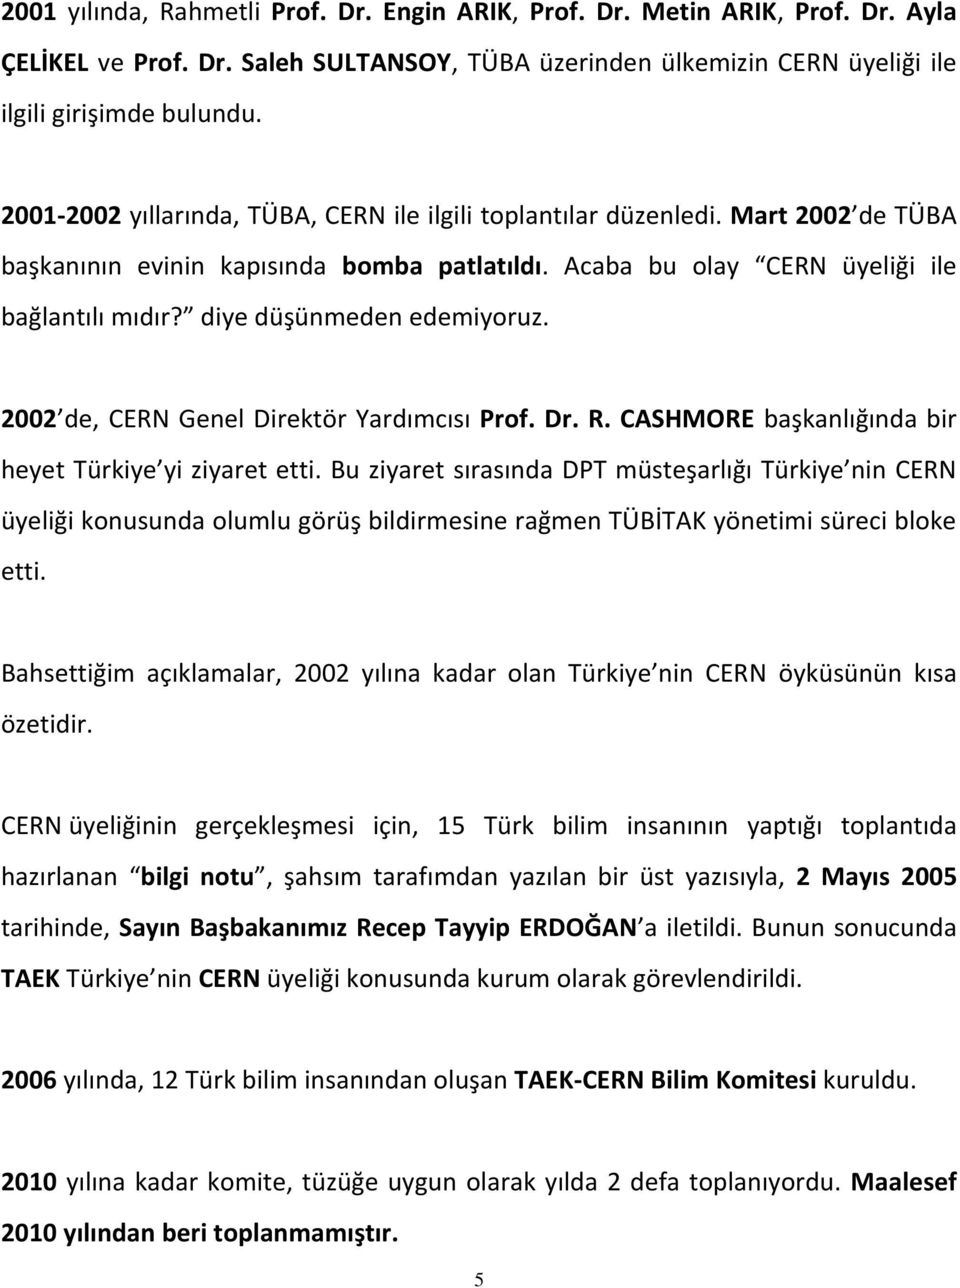 diye düşünmeden edemiyoruz. 2002 de, CERN Genel Direktör Yardımcısı Prof. Dr. R. CASHMORE başkanlığında bir heyet Türkiye yi ziyaret etti.